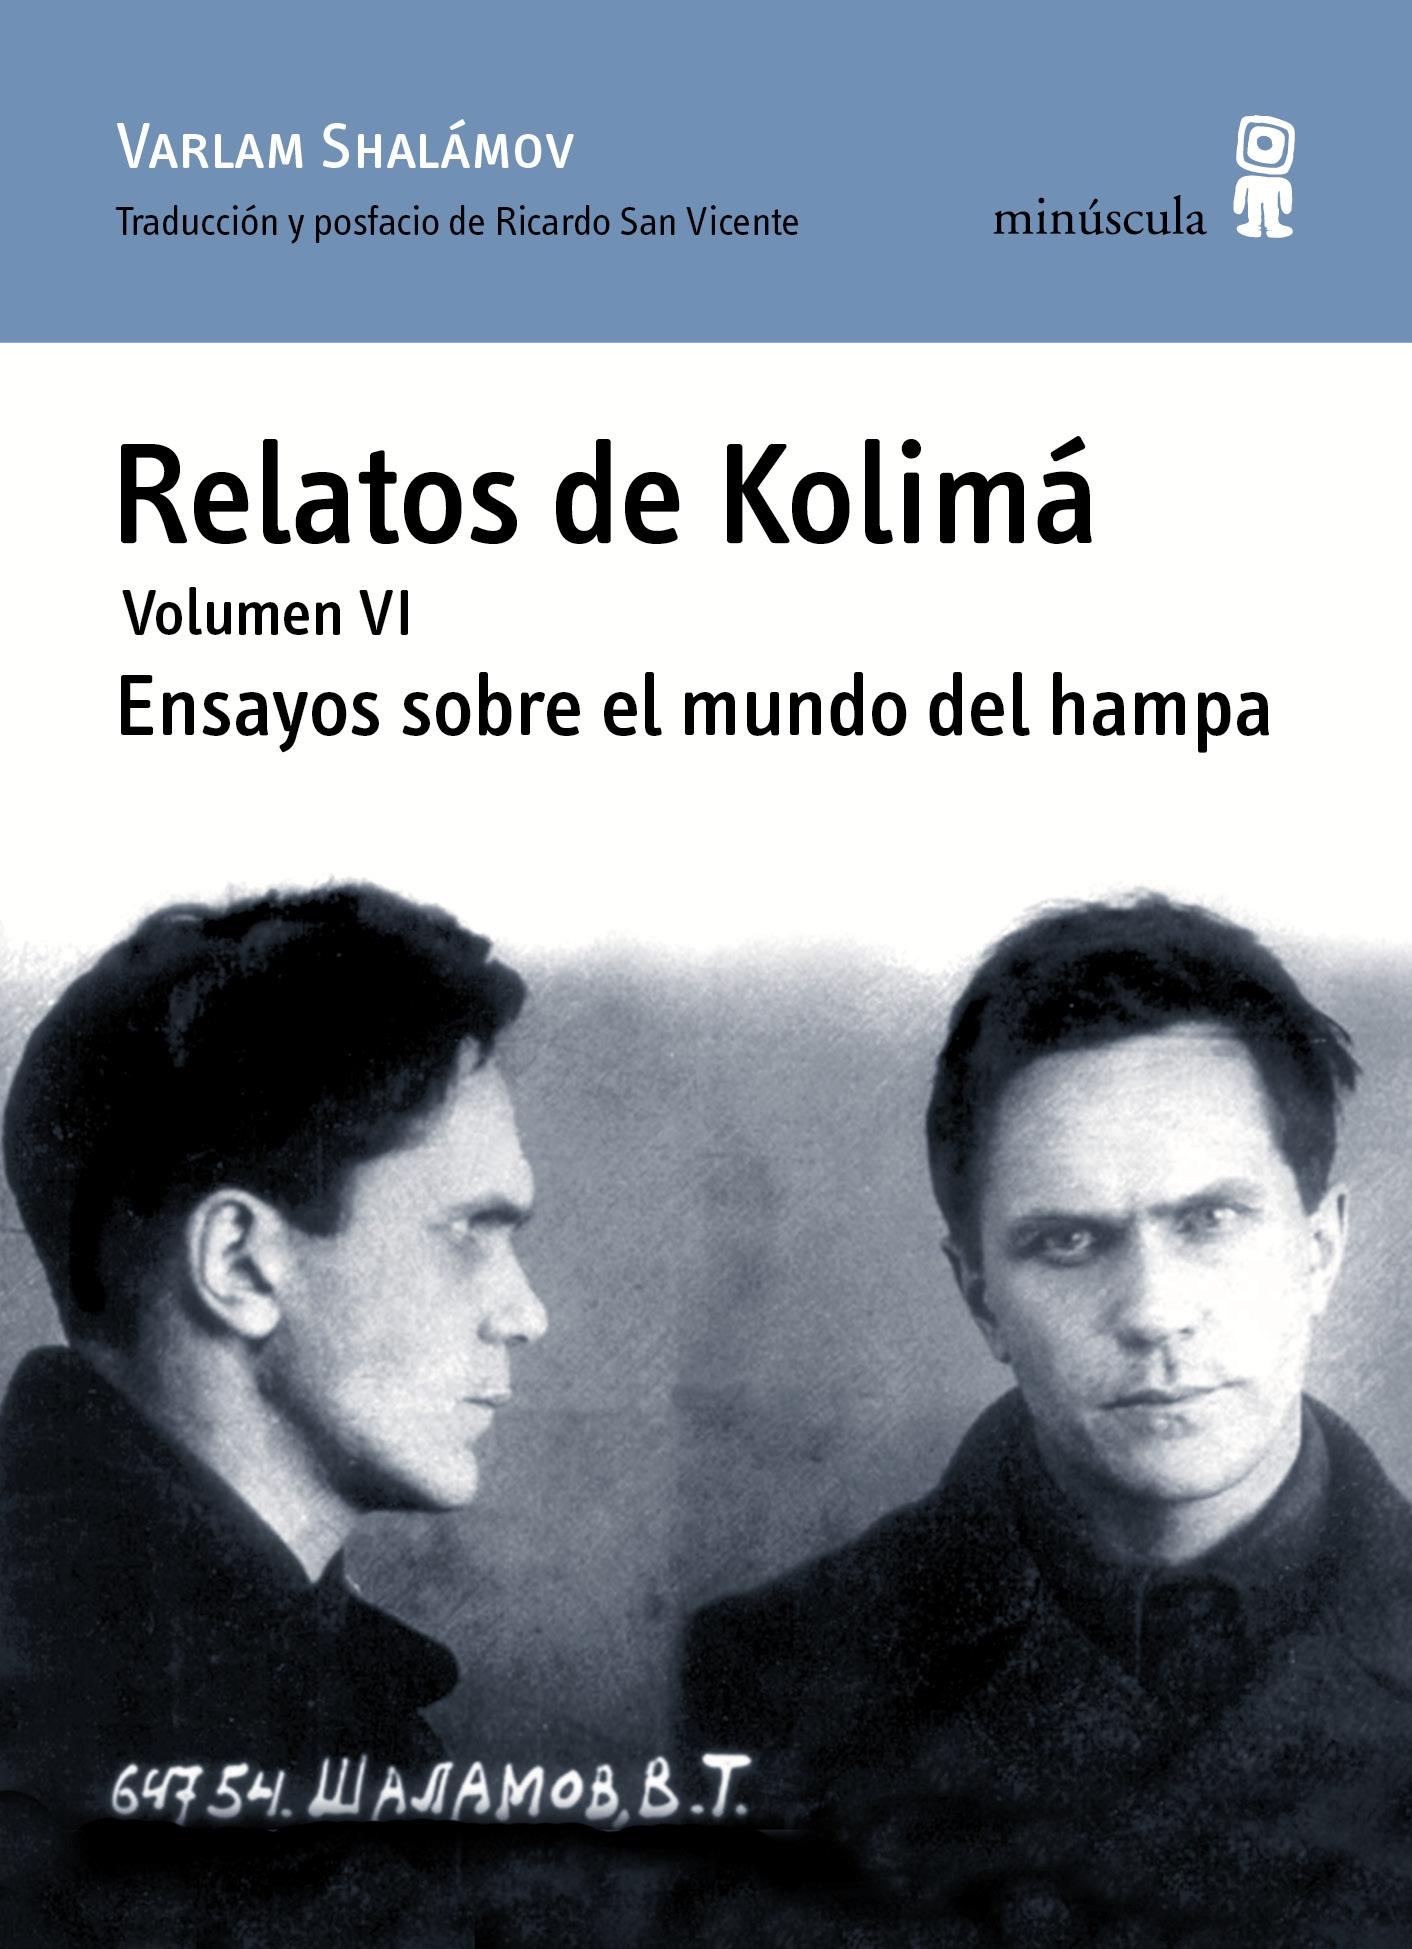 Relatos de Kolimá. Volumen Vi "Ensayos sobre el Mundo del Hampa". 